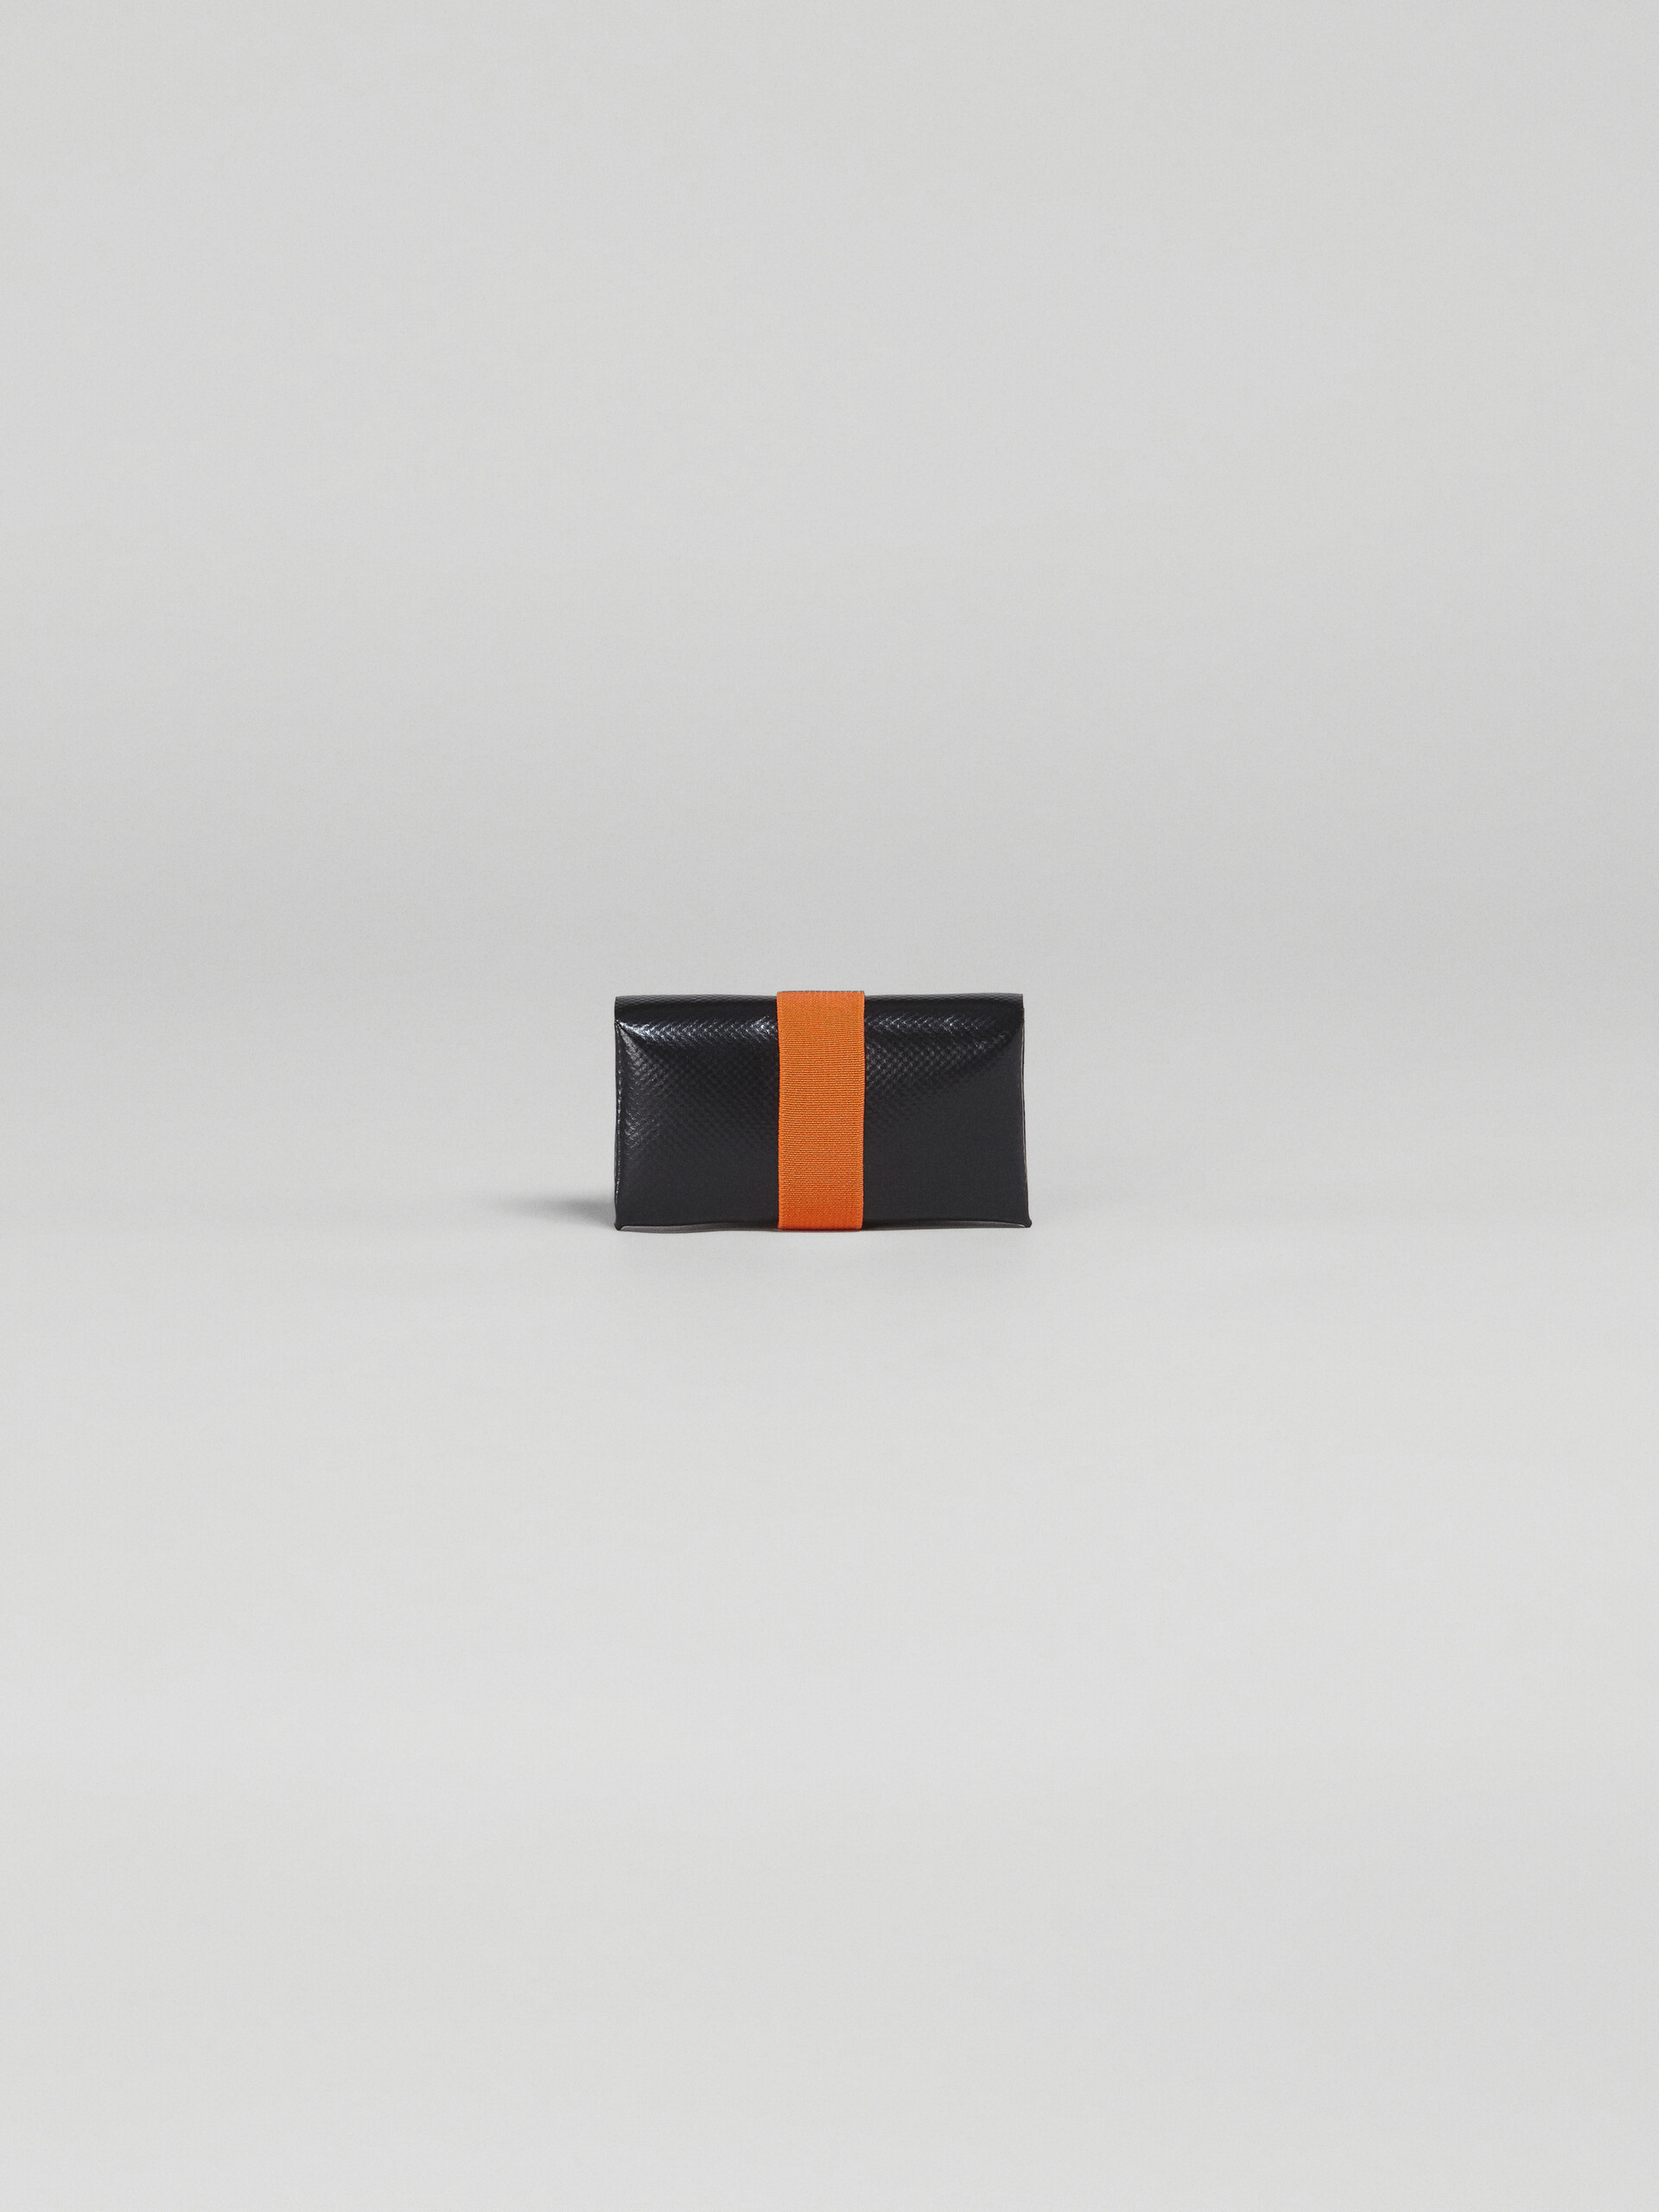 Portafoglio tri-fold in PVC nero e arancio - Portafogli - Image 3